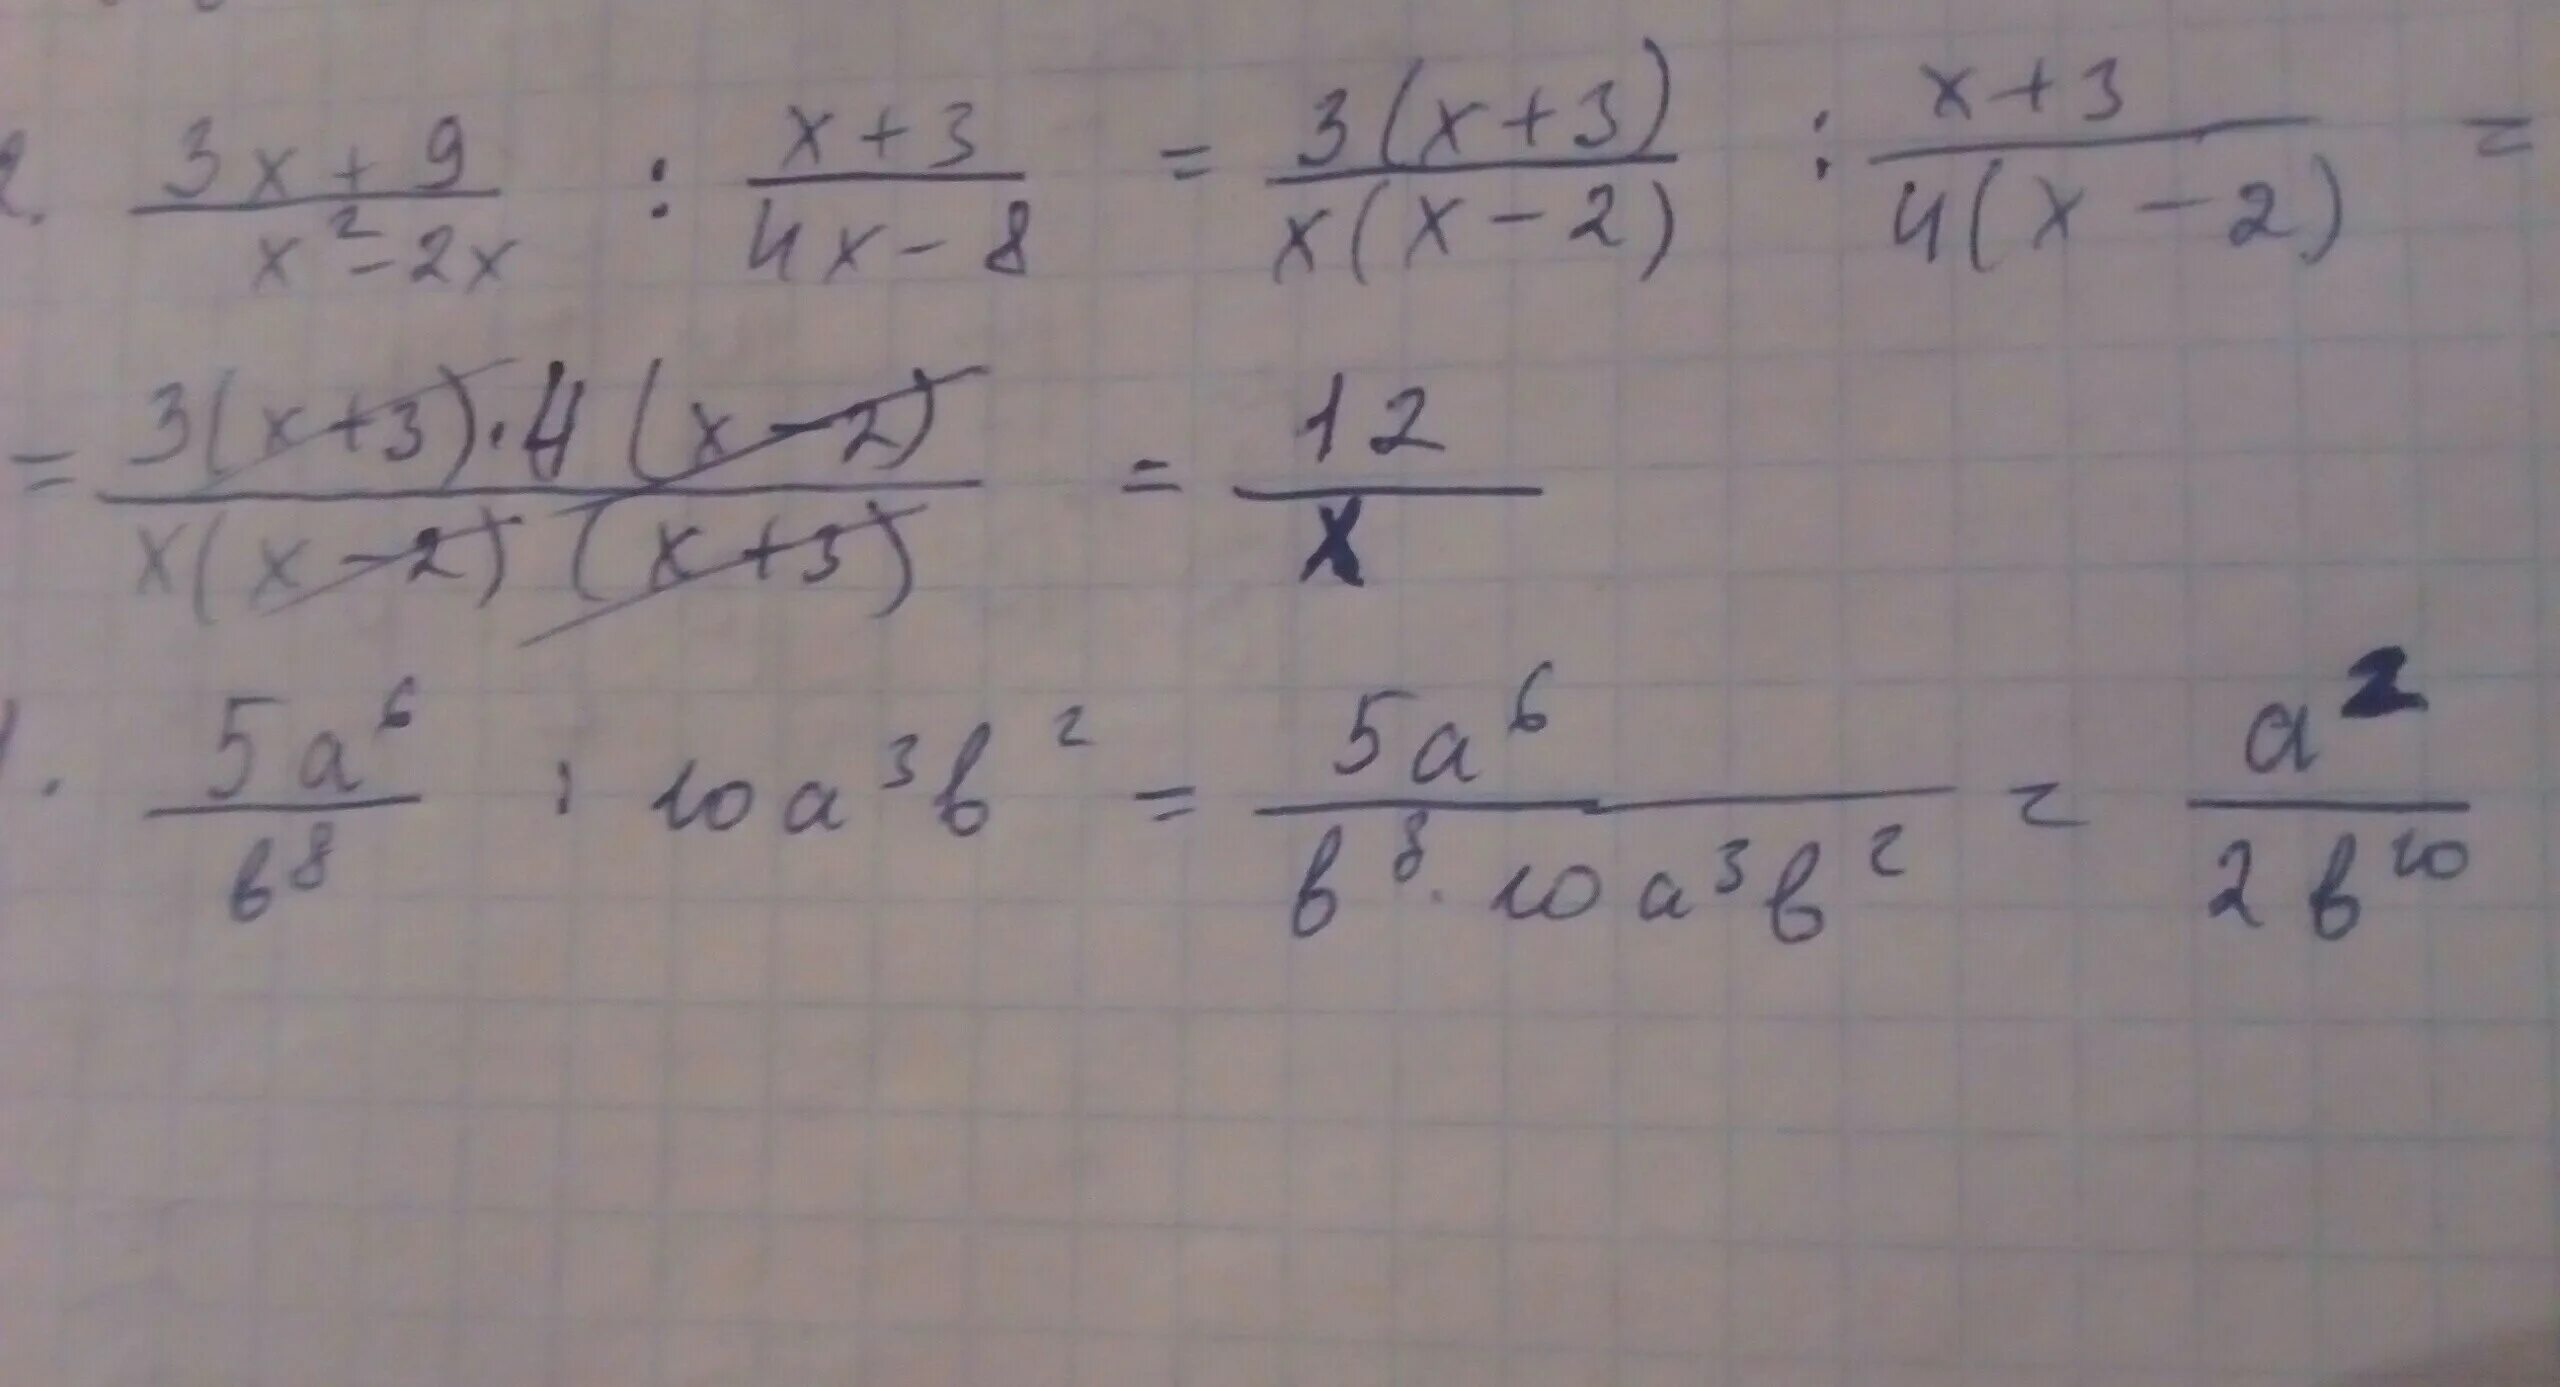 (Х-3)(Х+3). 3/Х+2-5/Х-3 -9/2. Х+1/3=5/6. Упростите выражения -9(3x-1/9)+(x+4/9). 10 6 разделить на 5 3